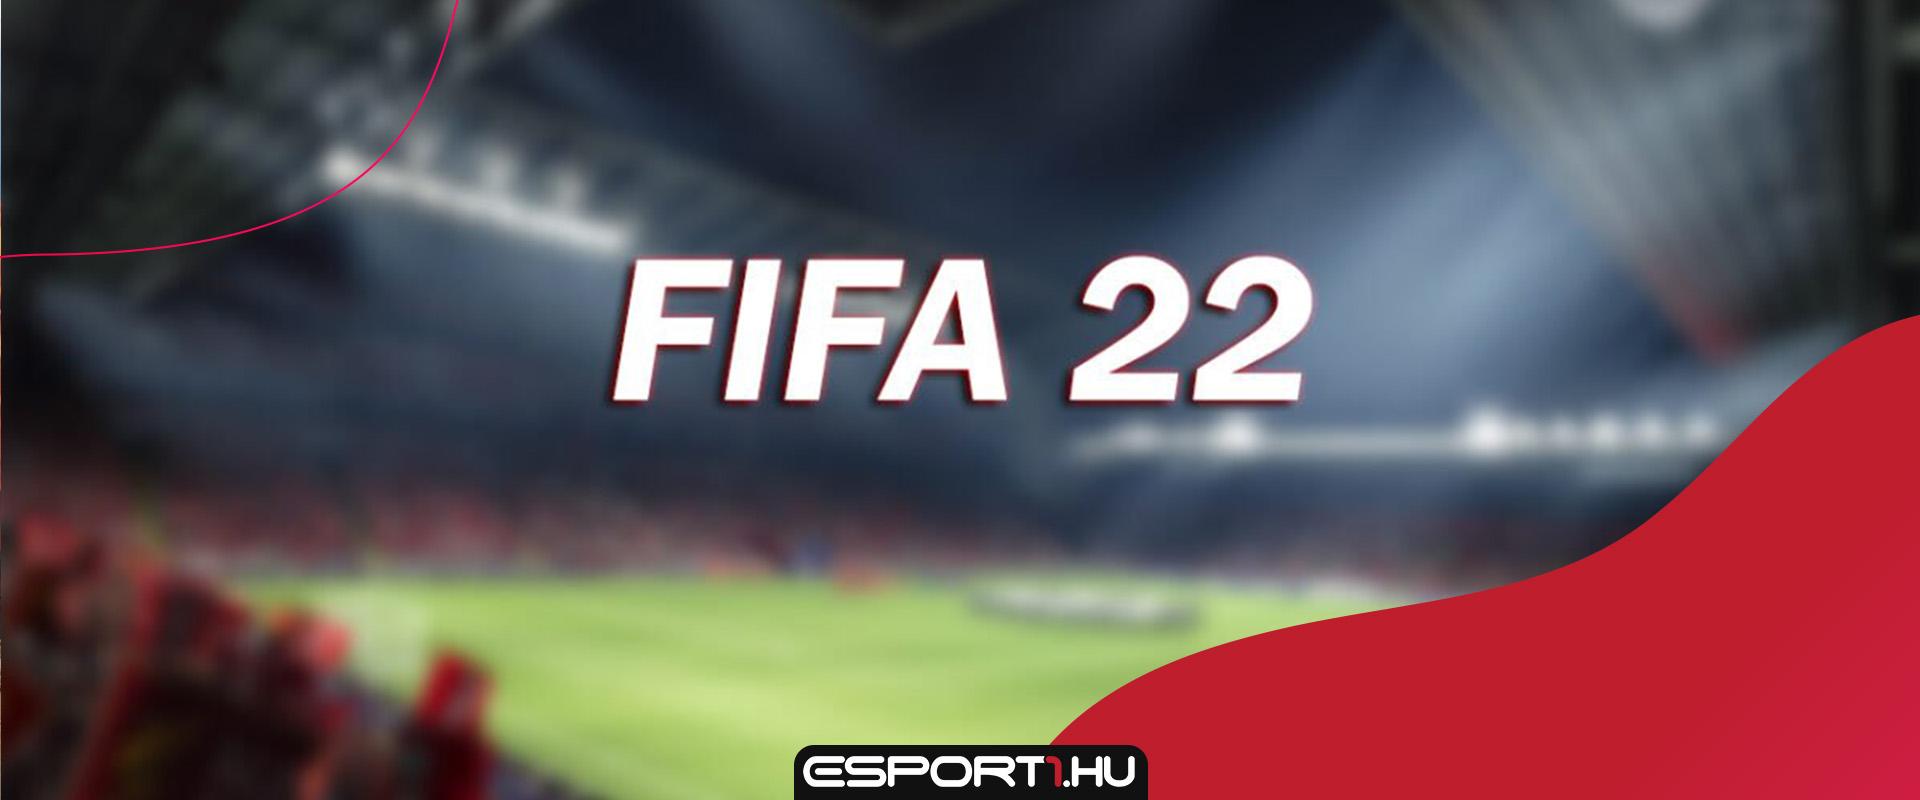 Egy magyar csapat biztosan benne lesz a FIFA 22-ben?